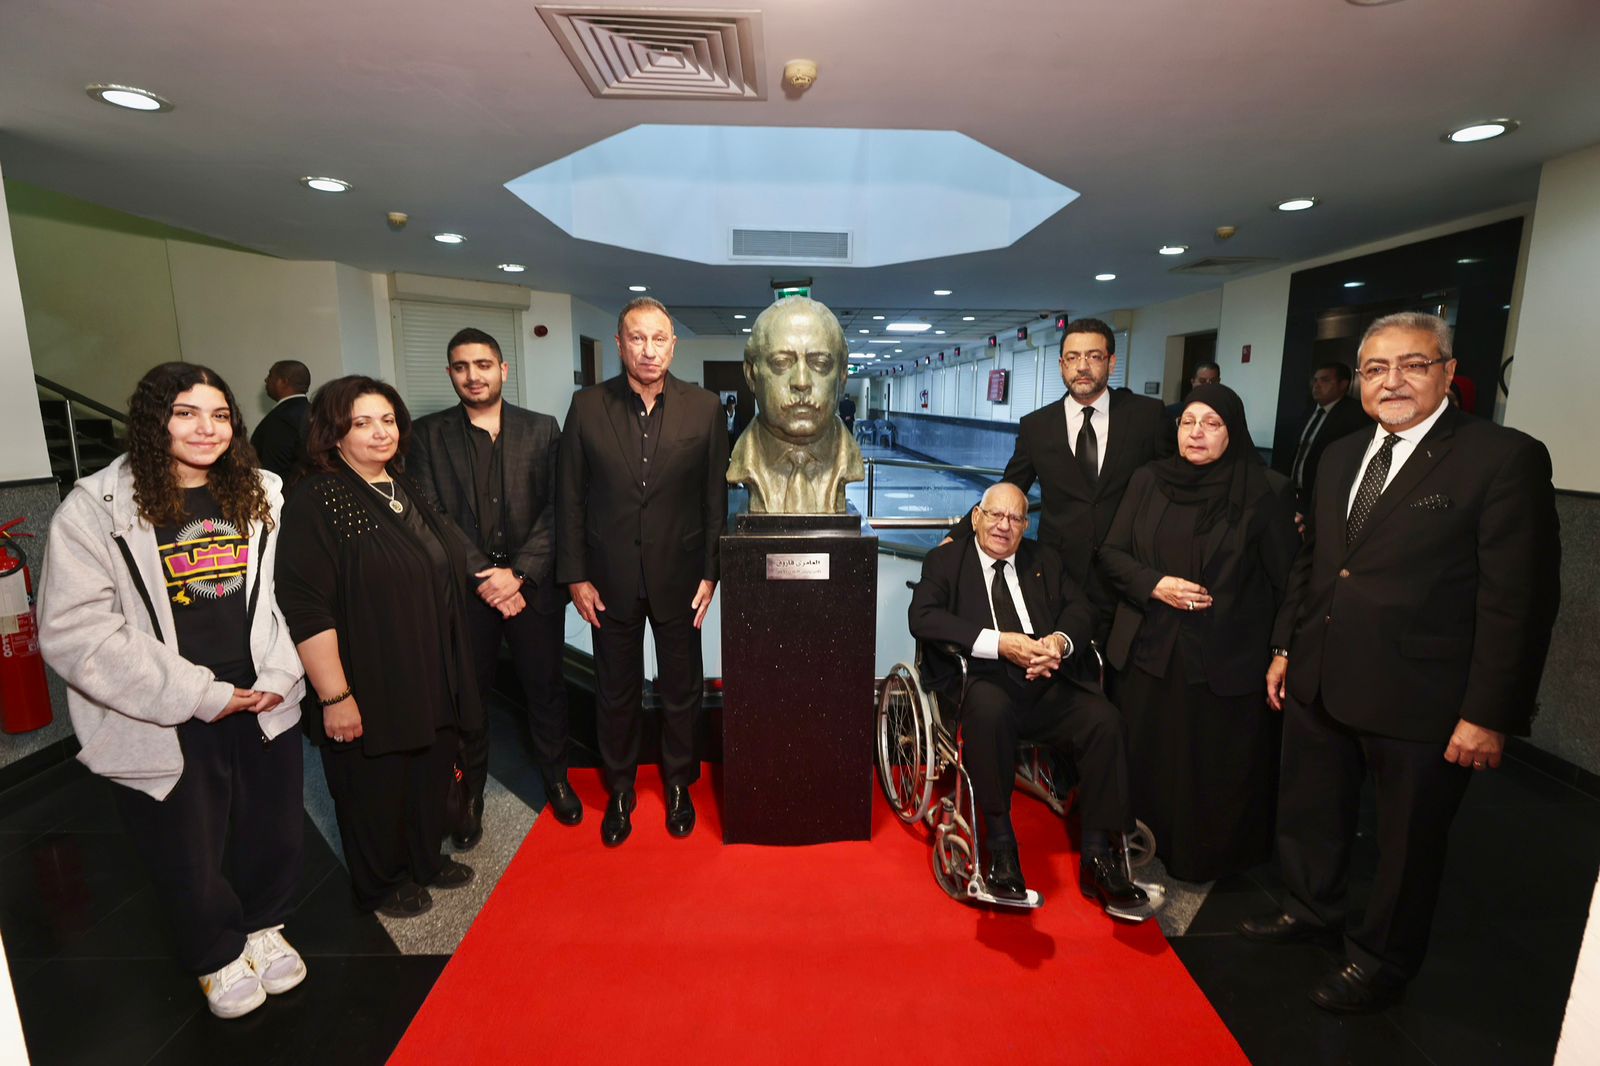 مجلس إدارة الأهلي يزيح الستار عن تمثال العامري فاروق.